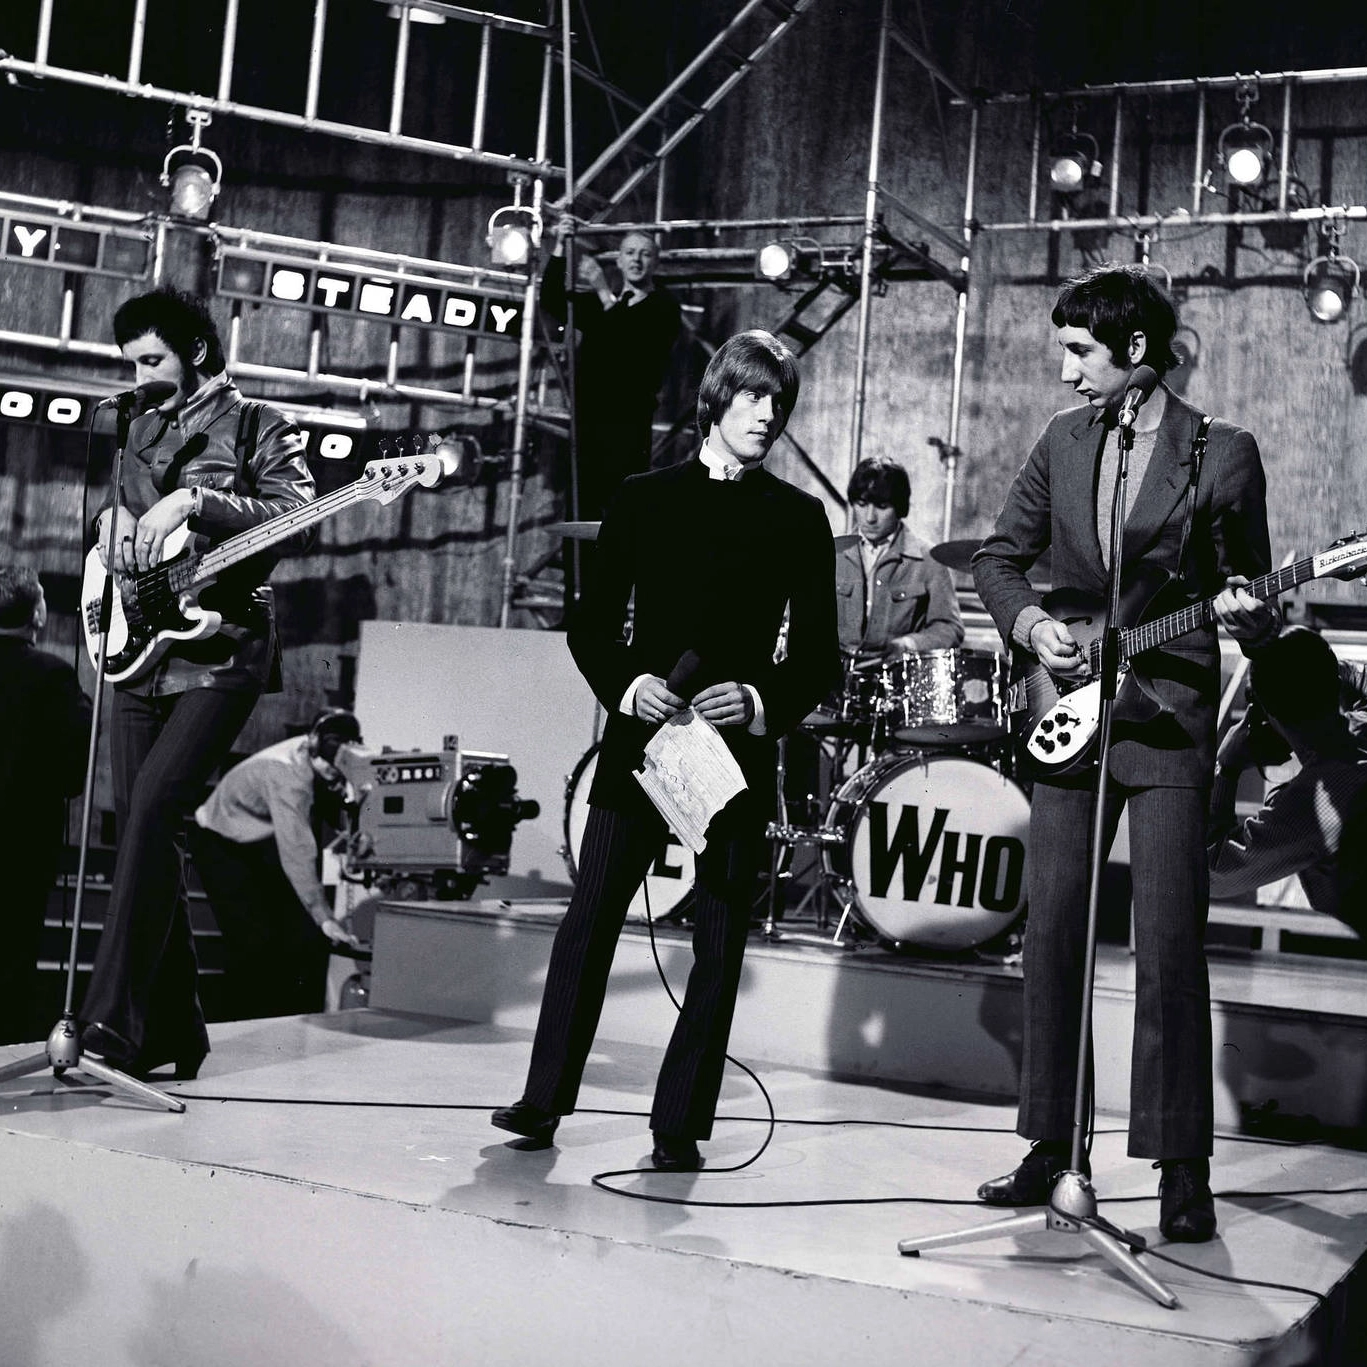 Gli Who in uno scatto di fine anni '60: la trasmissione è Ready, steady, go